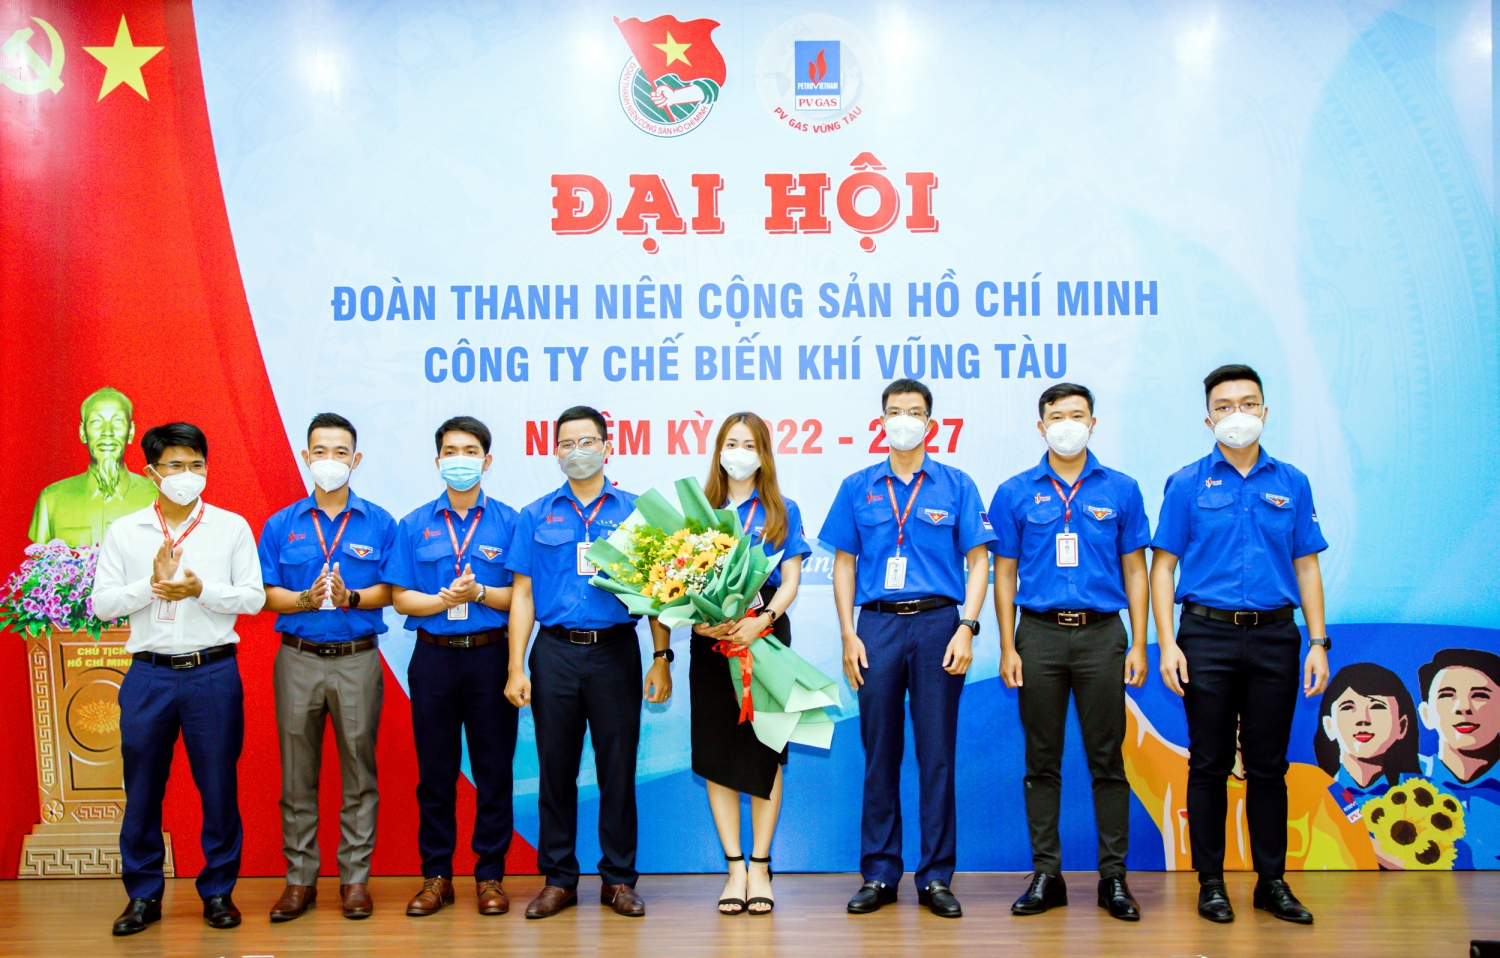 Đại hội Đoàn TNCS Hồ Chí Minh Công ty Chế biến Khí Vũng Tàu lần thứ IV, Nhiệm kỳ 2022 - 2027